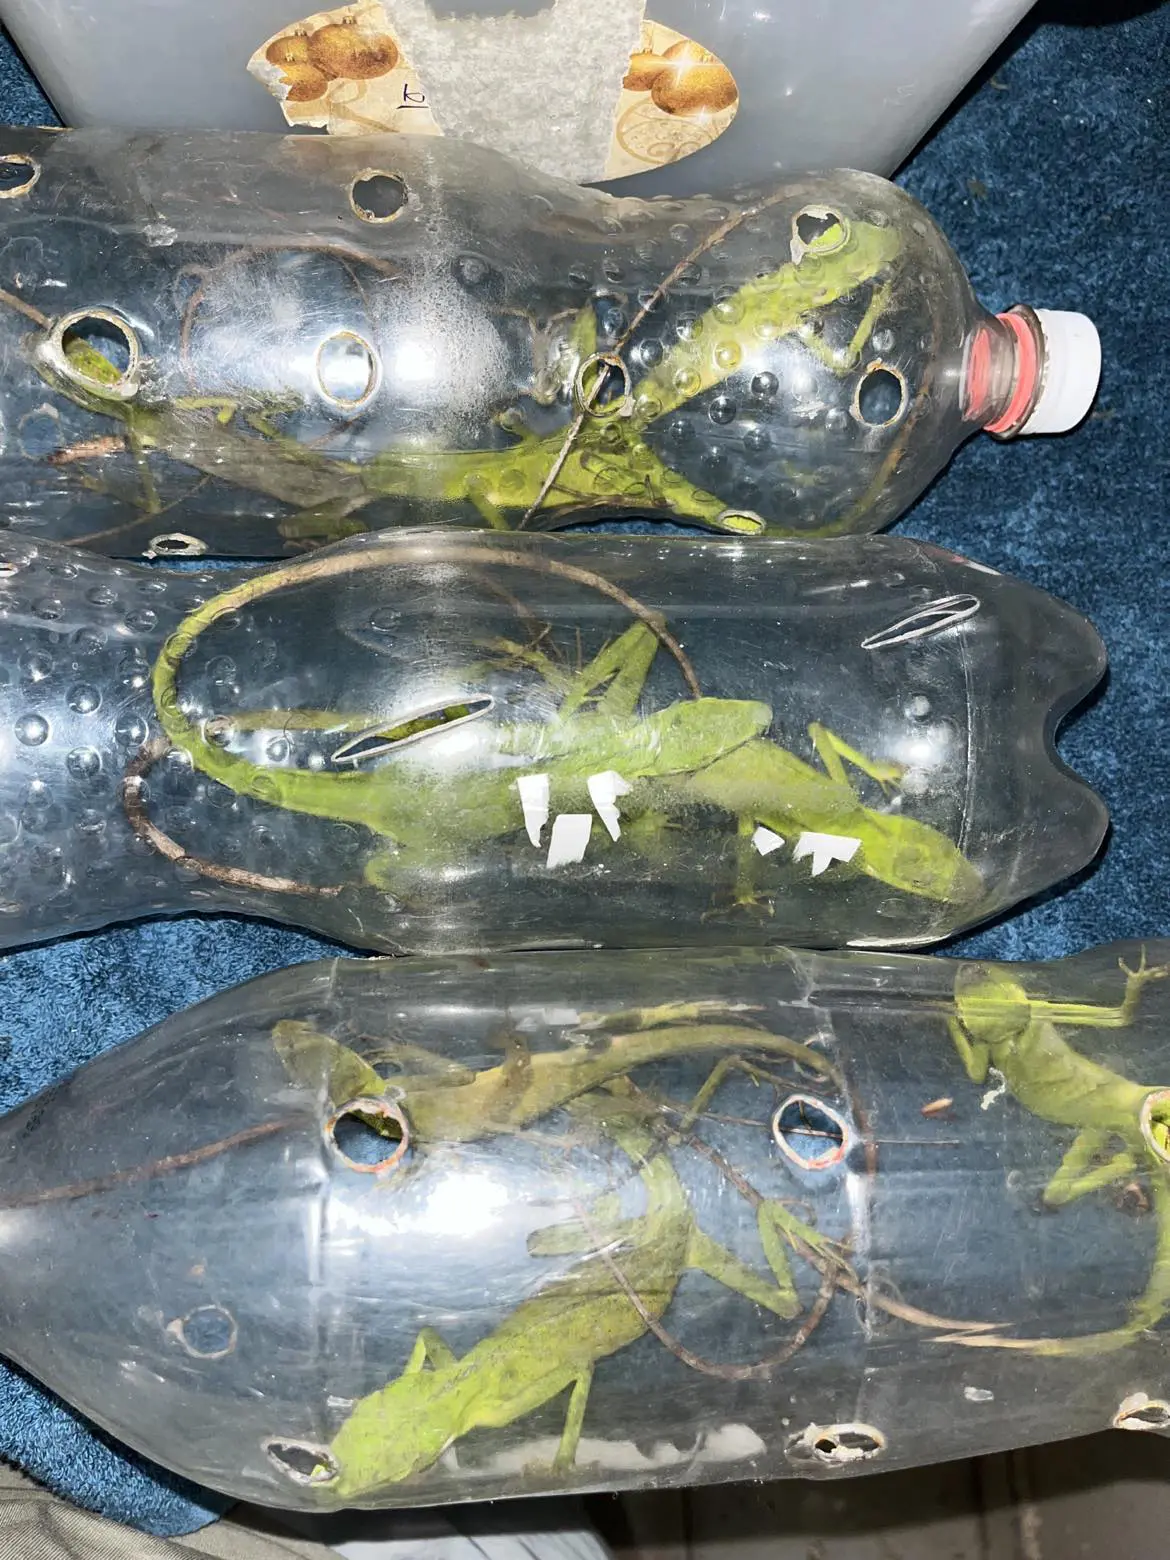 Green-crested-lizard-in-the-coke-bottle-